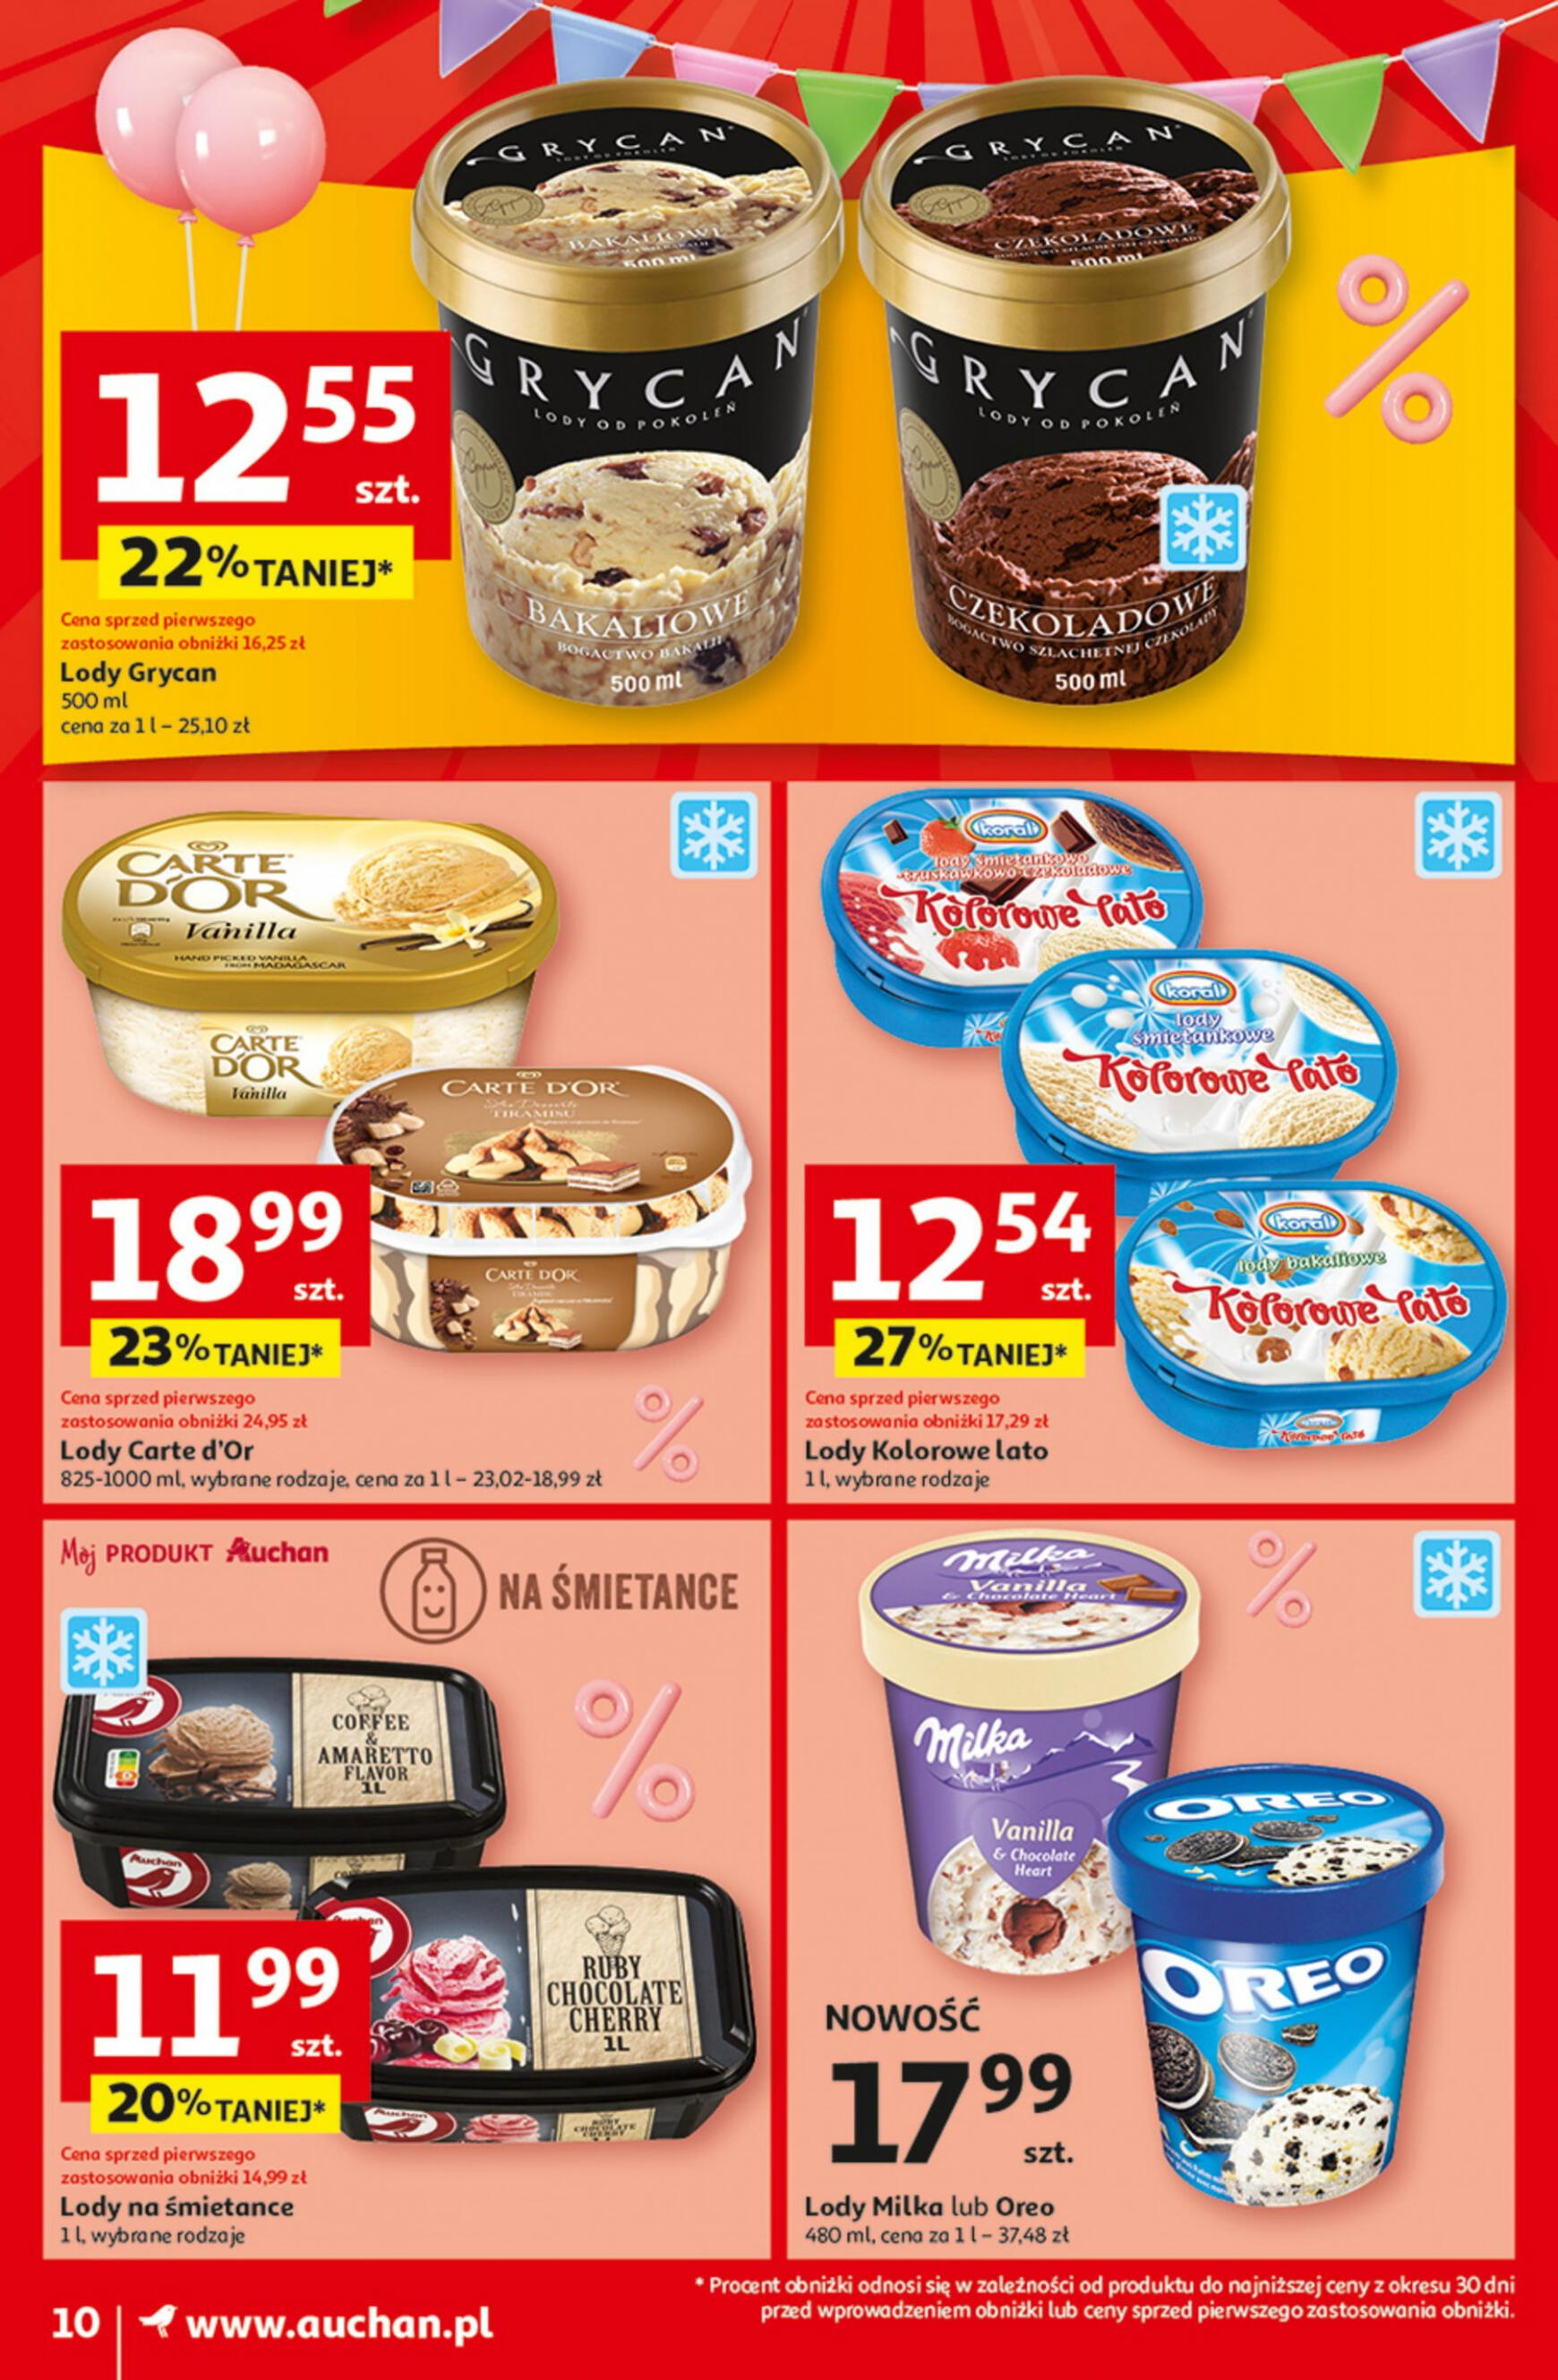 auchan - Moje Auchan - Gazetka Jeszcze taniej na urodziny gazetka aktualna ważna od 09.05. - 15.05. - page: 10